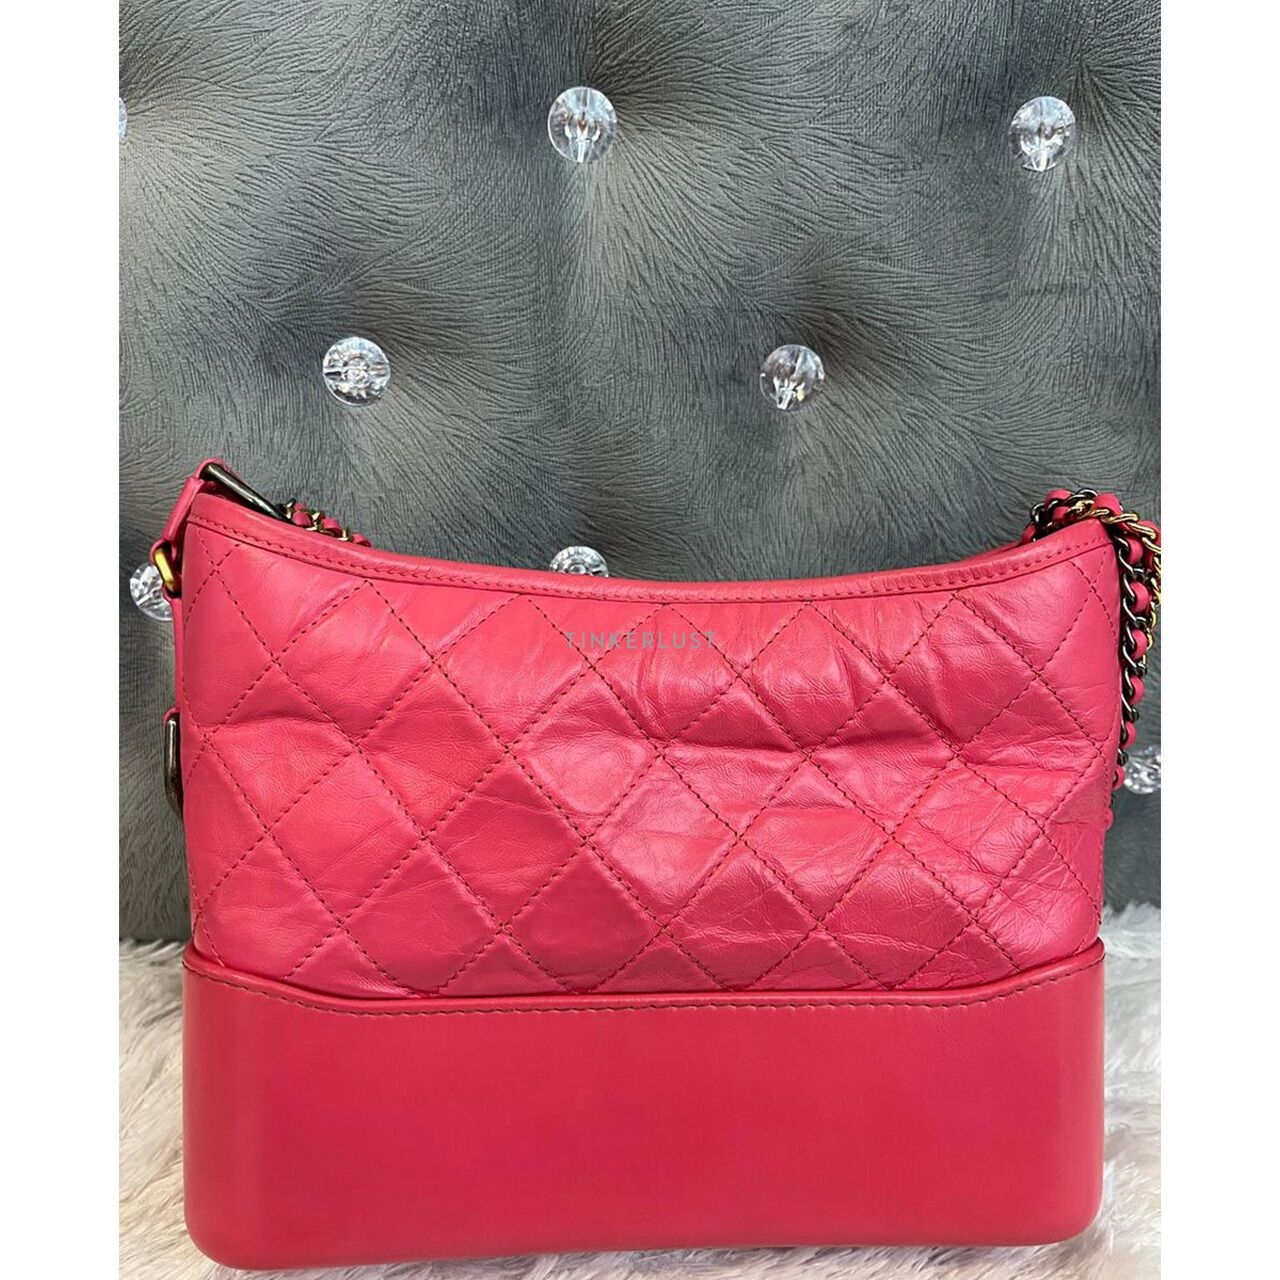 Chanel Gabrielle Medium Fuchsia #31 Sling Bag